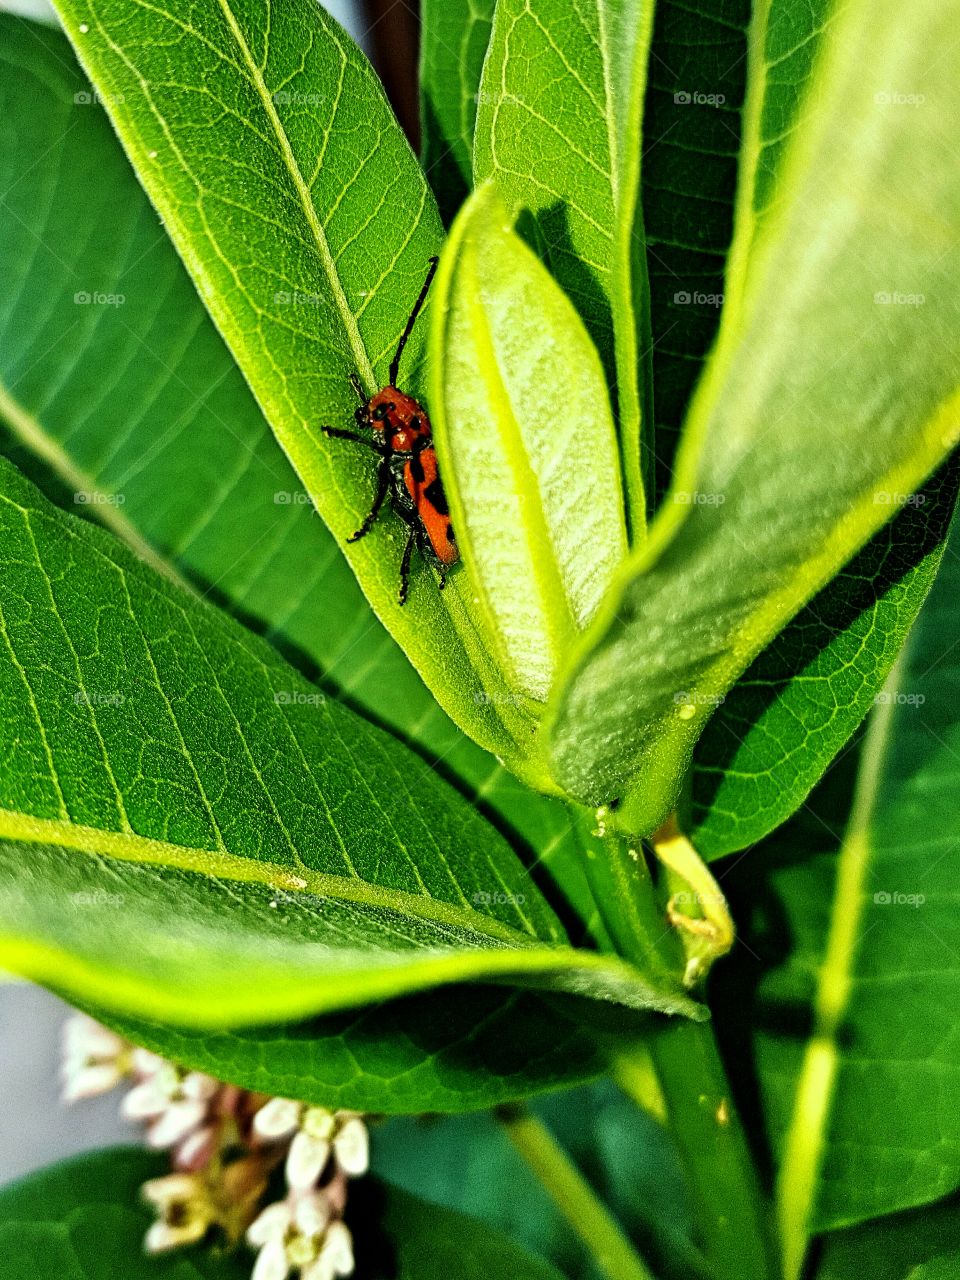 bug on the milkweed